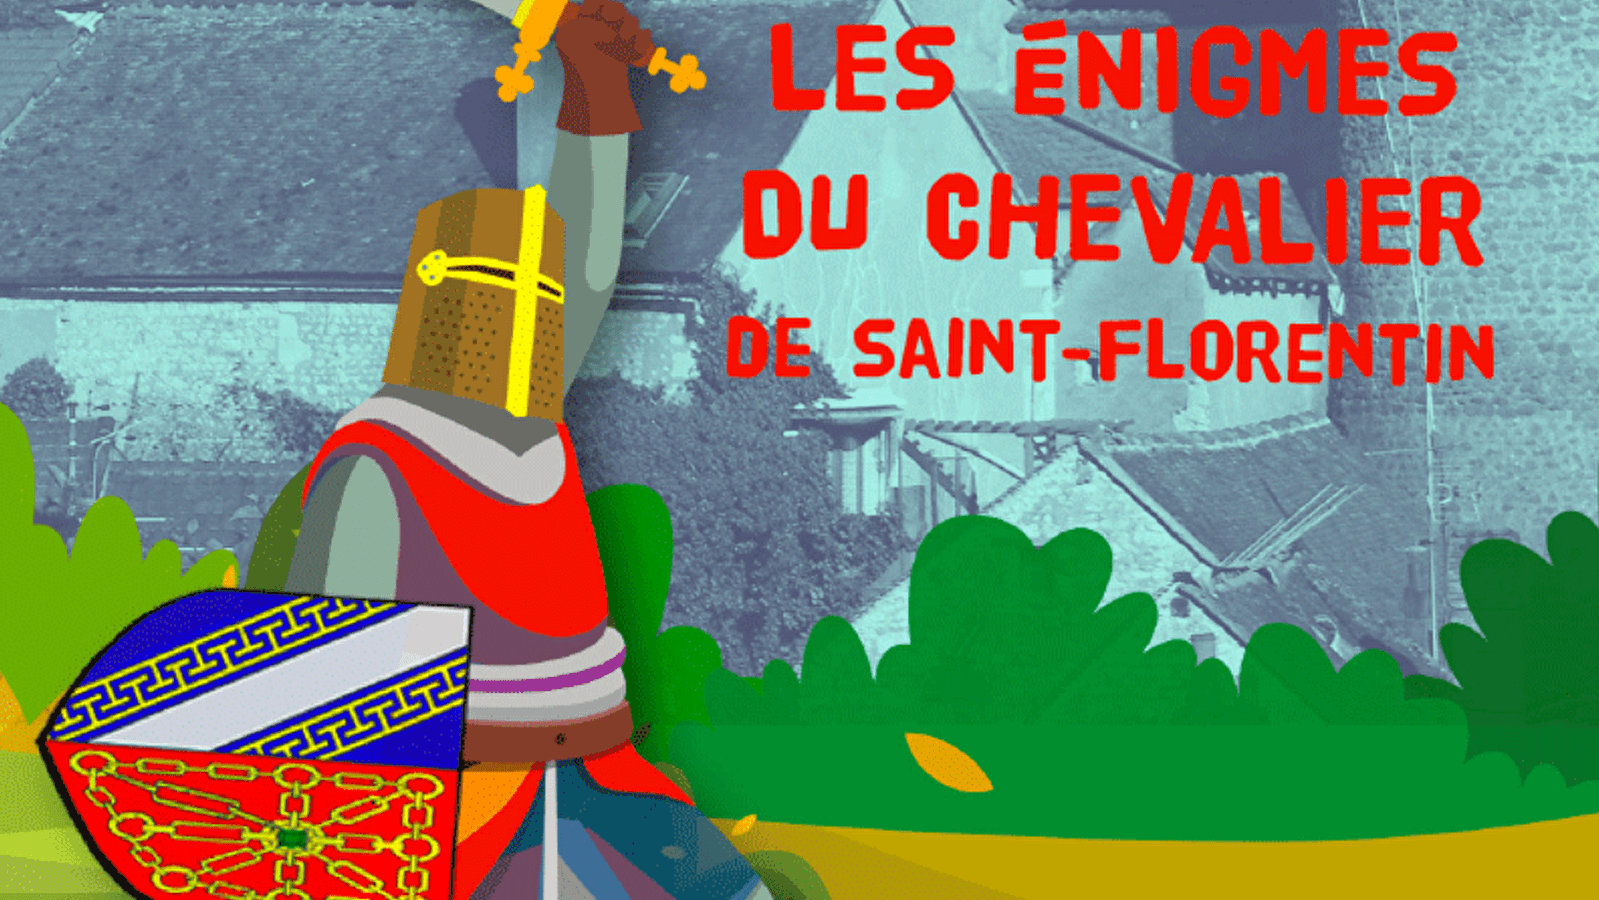 Pars sur les traces du Chevalier de Saint-Florentin et résous les énigmes !